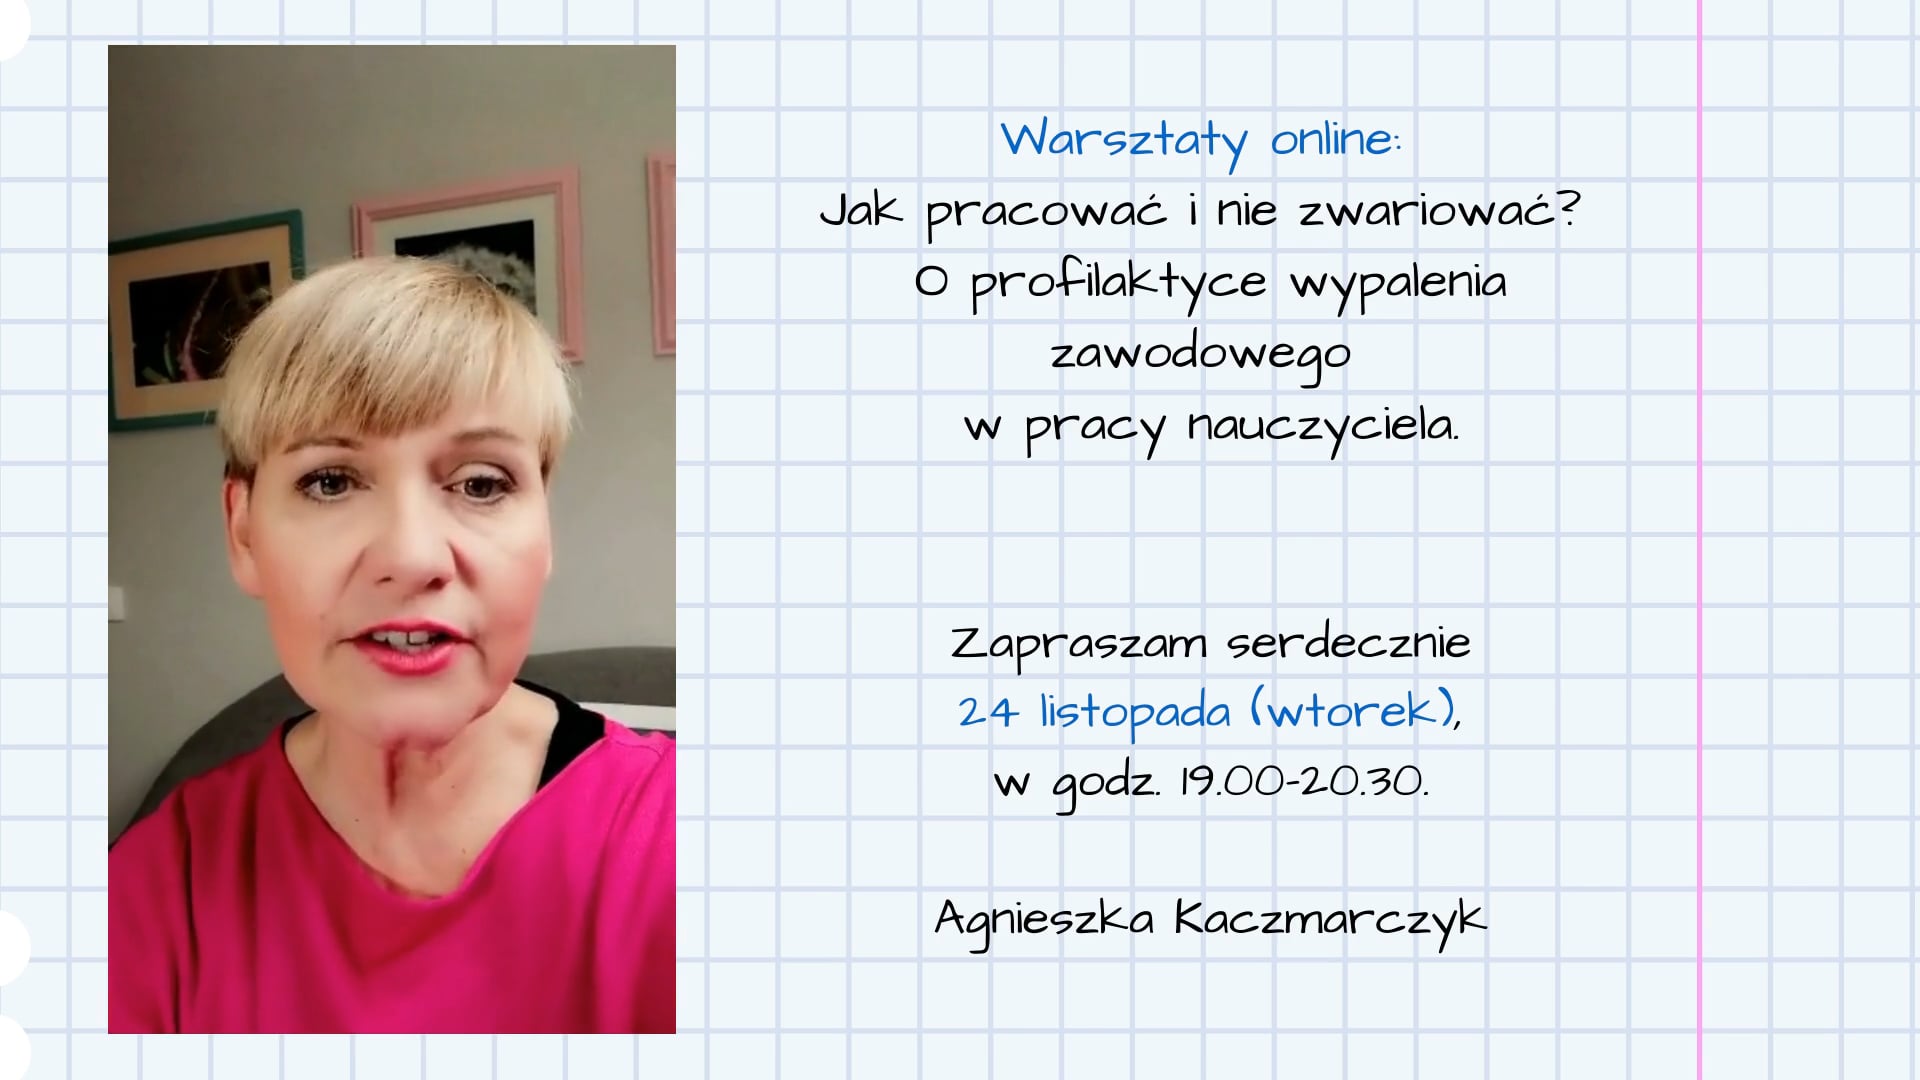 Warsztaty online - zaproszenie Agnieszka Kaczmarczyk on Vimeo